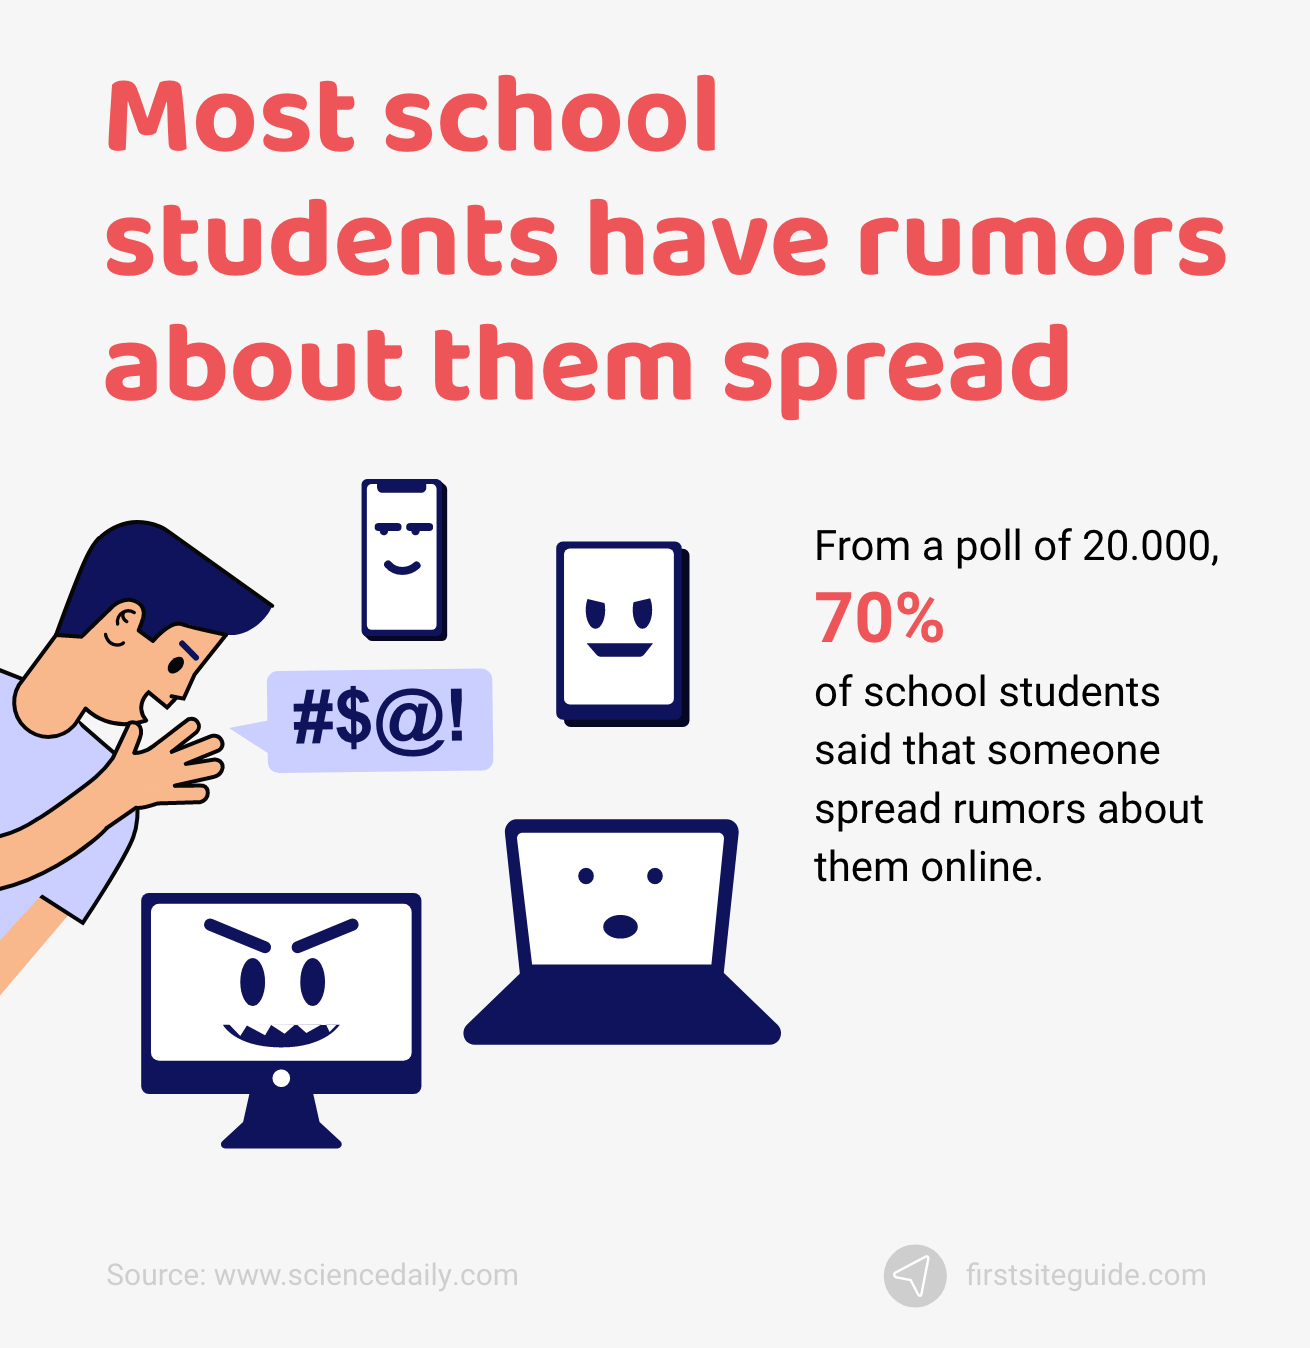 A maioria dos alunos da escola tem rumores sobre eles espalhados online